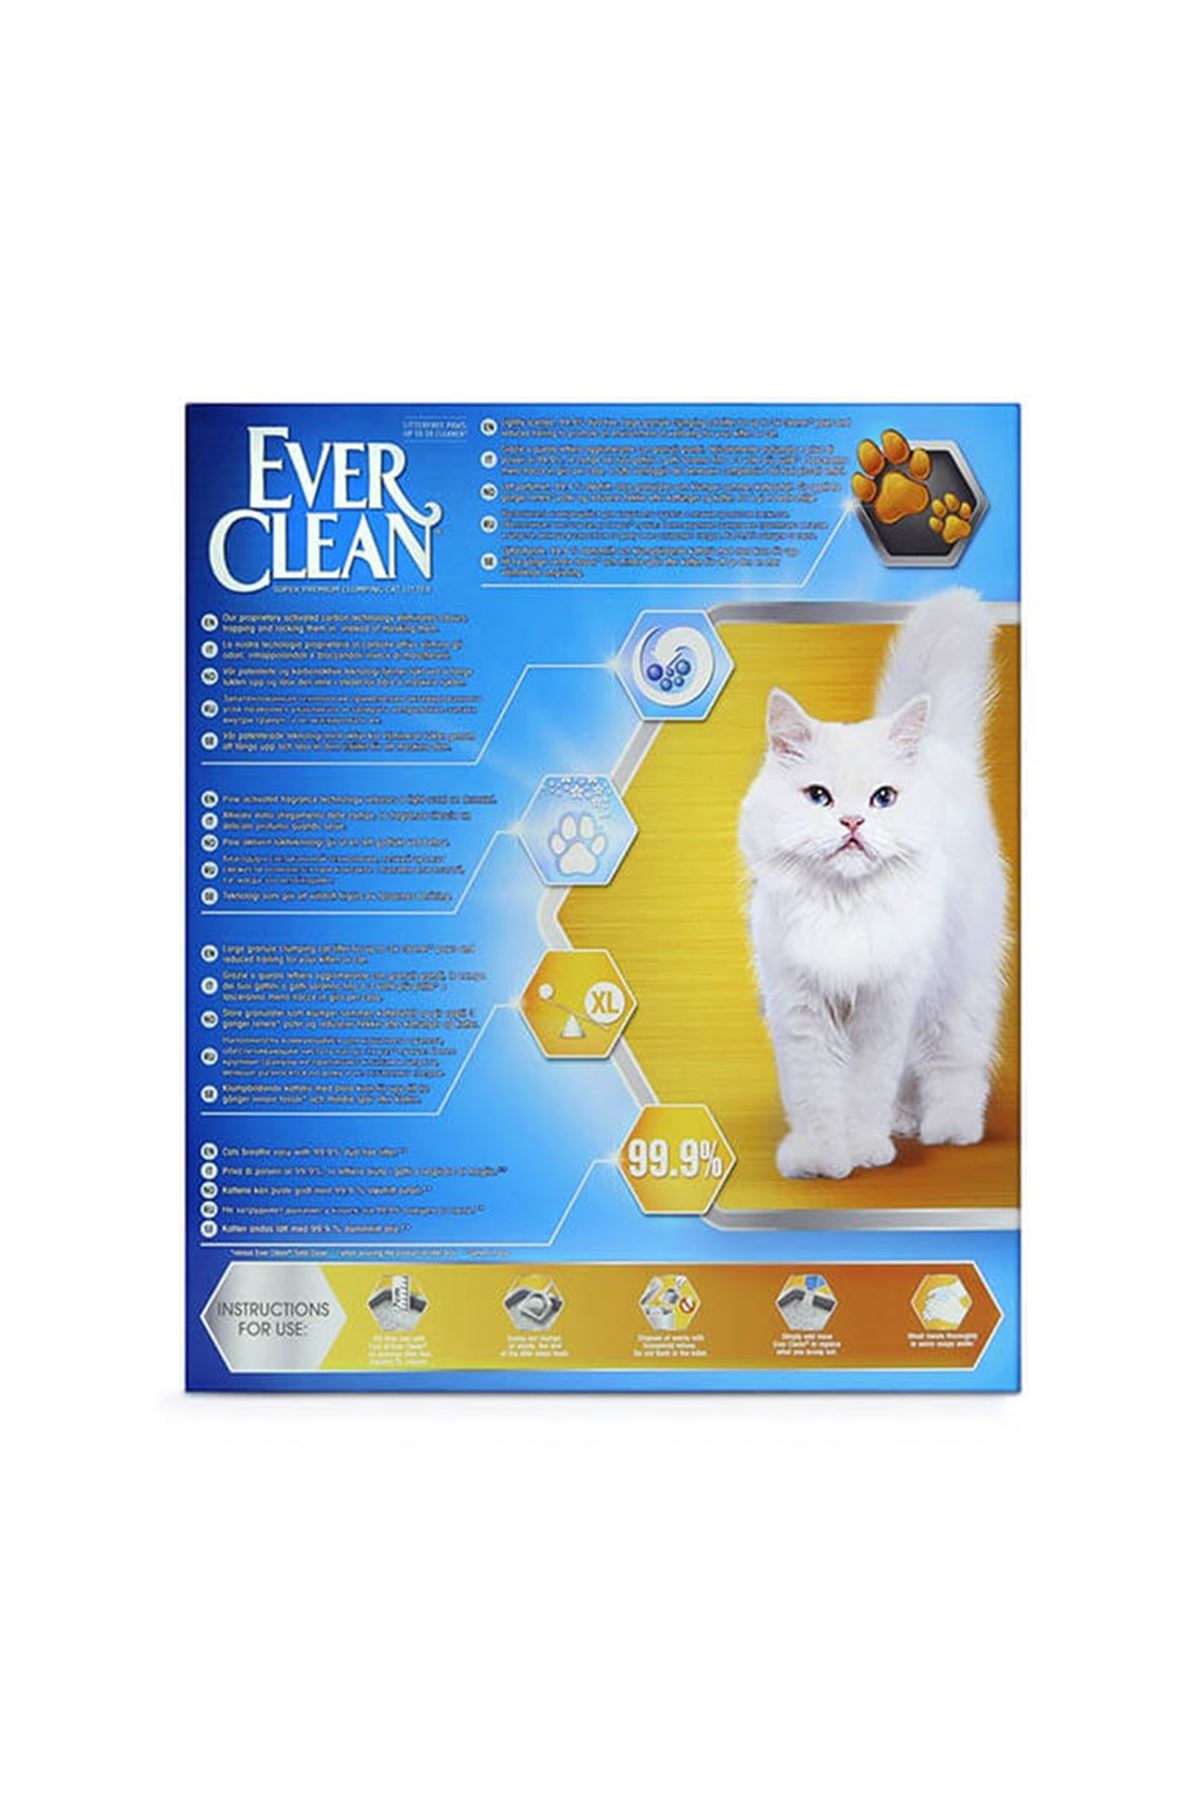 Ever Clean LitterFree Paws Patiye Yapışmayan ve İz Bırakmayan Kedi Kumu 10 lt